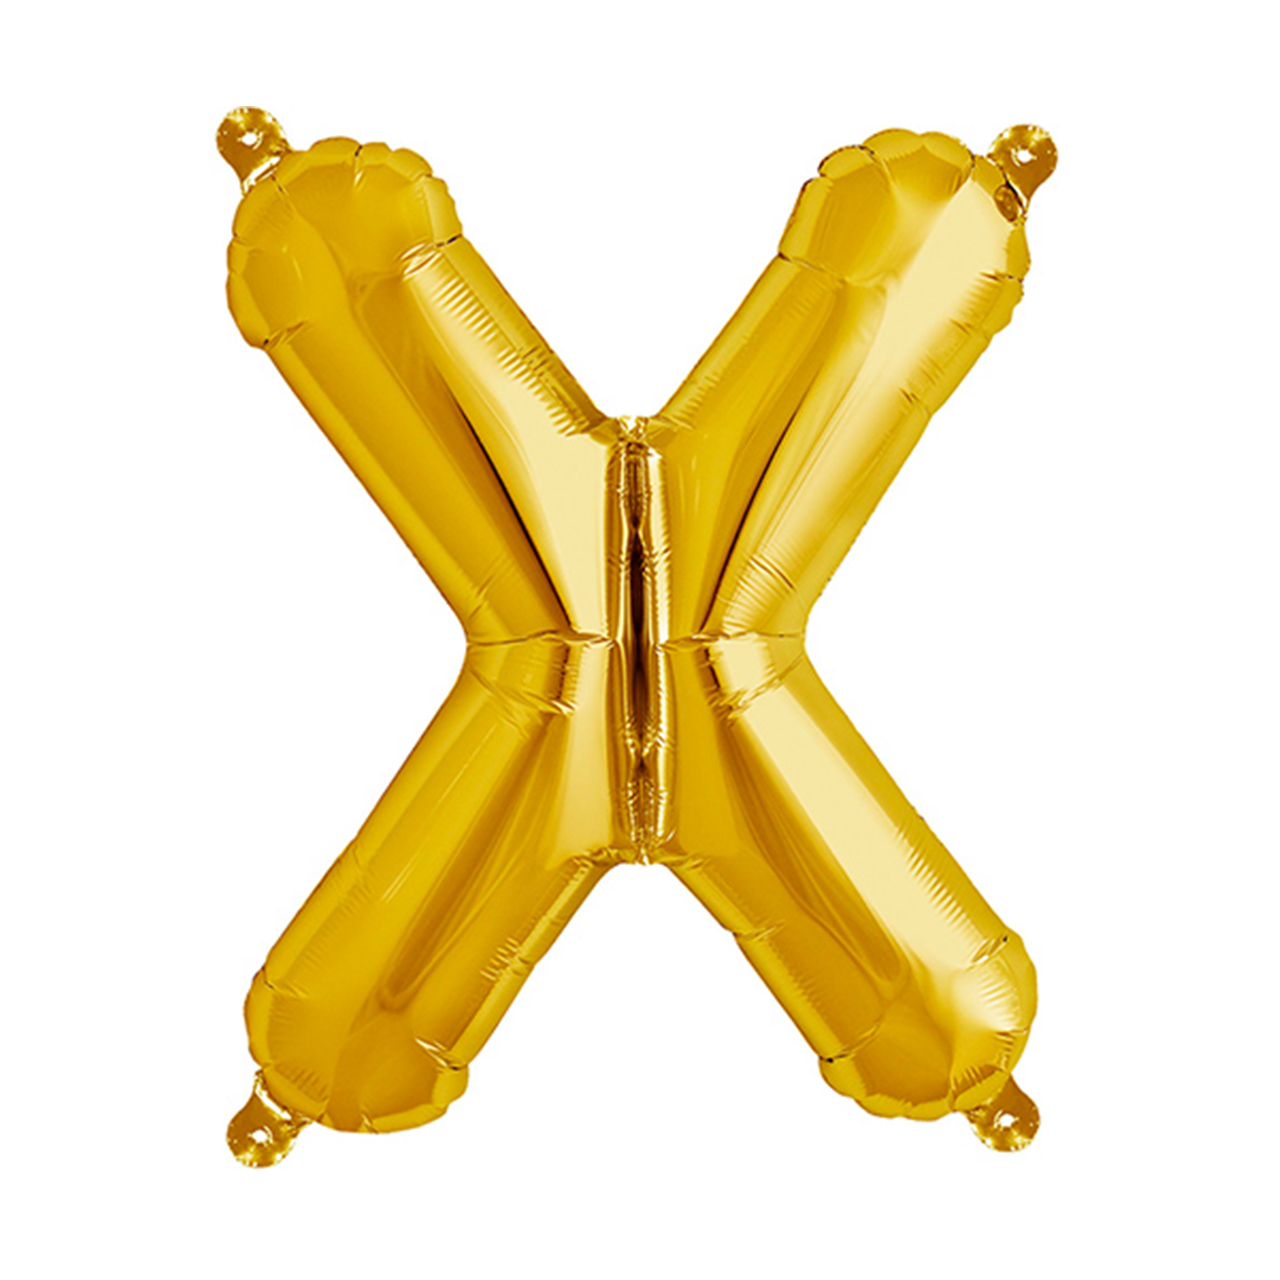 بادکنک فویلی سورتک طرح حروف انگلیسی مدل X